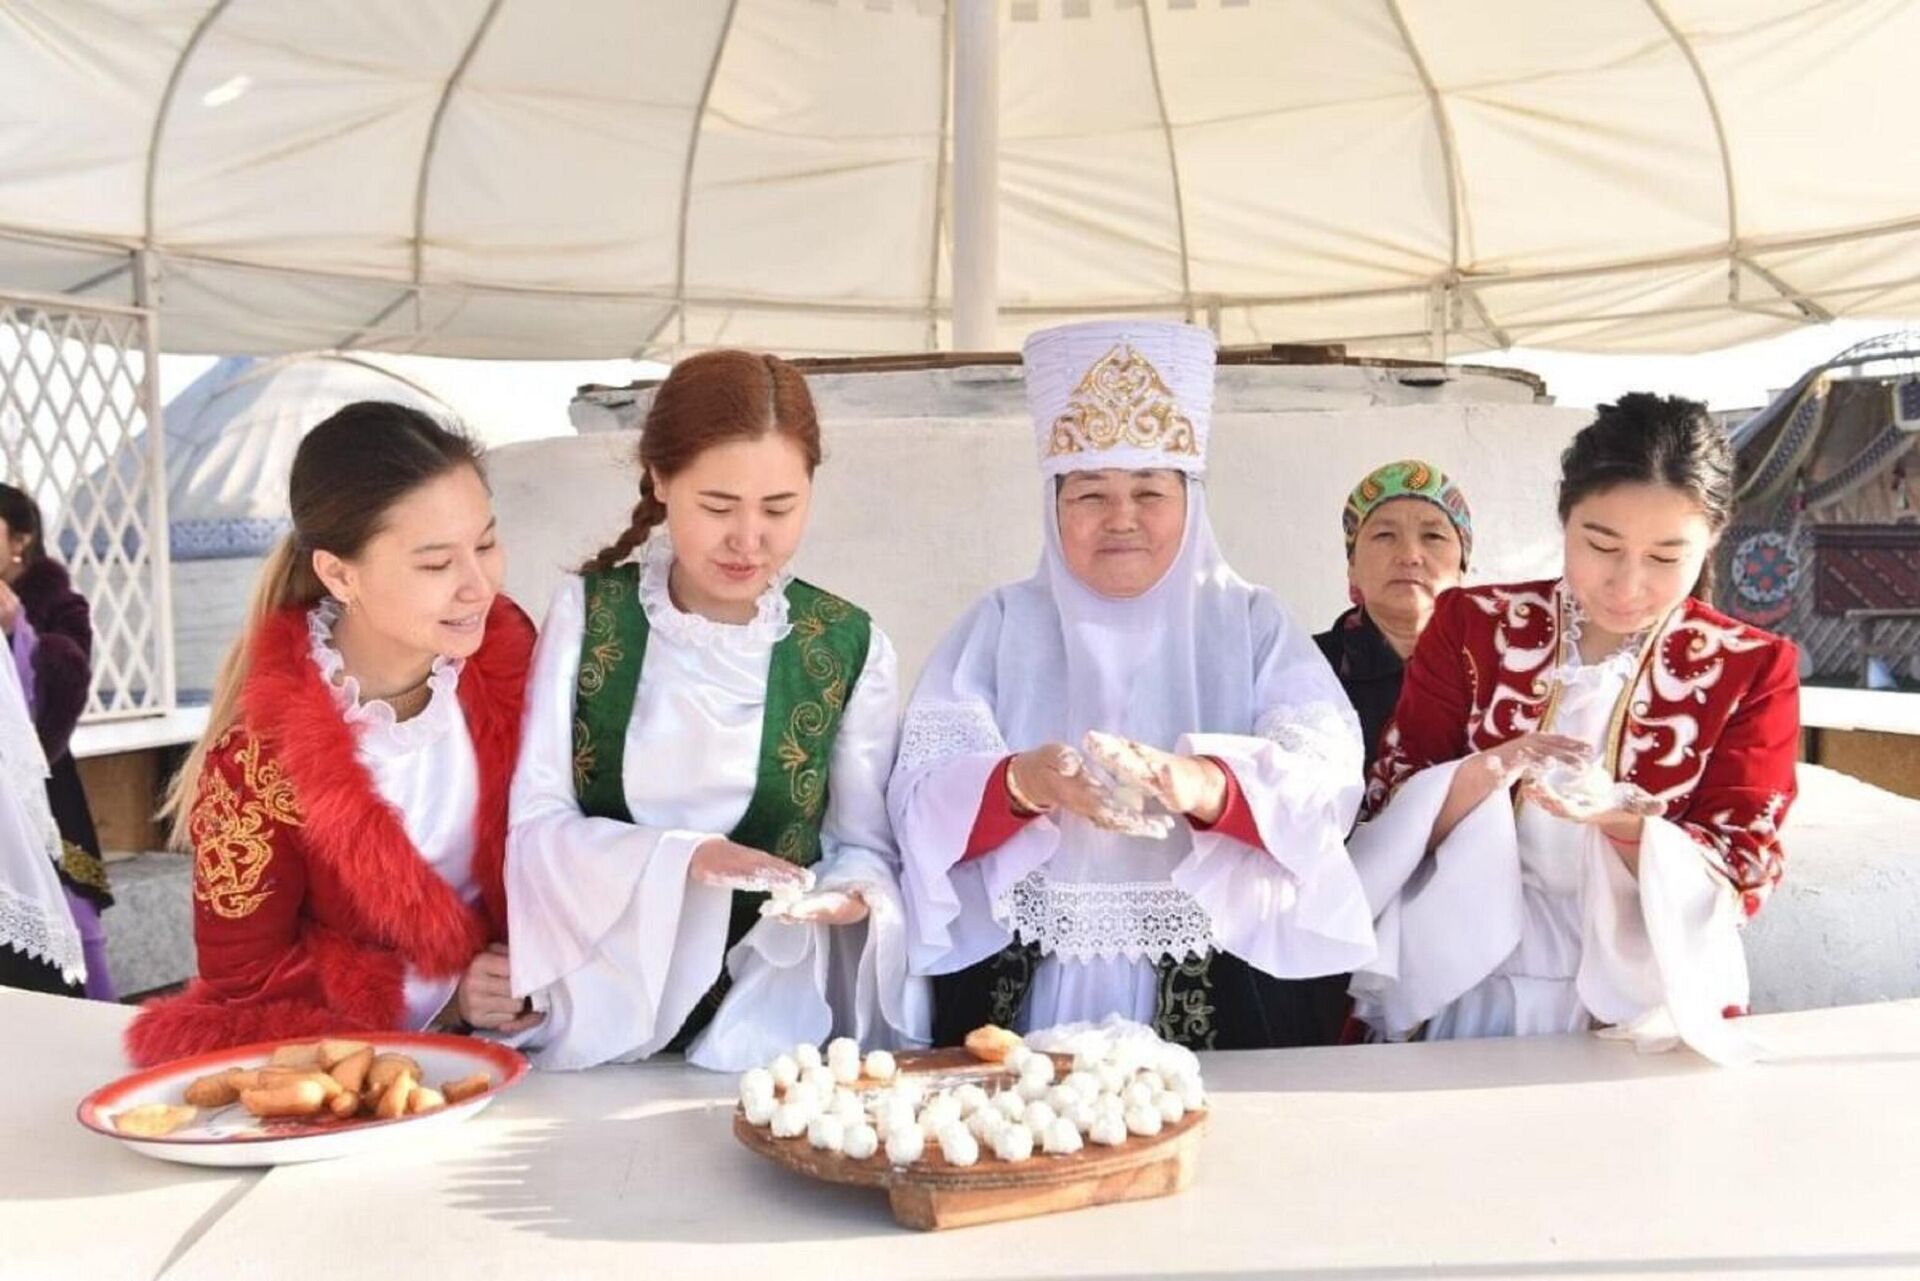 День благодарения в казахстане